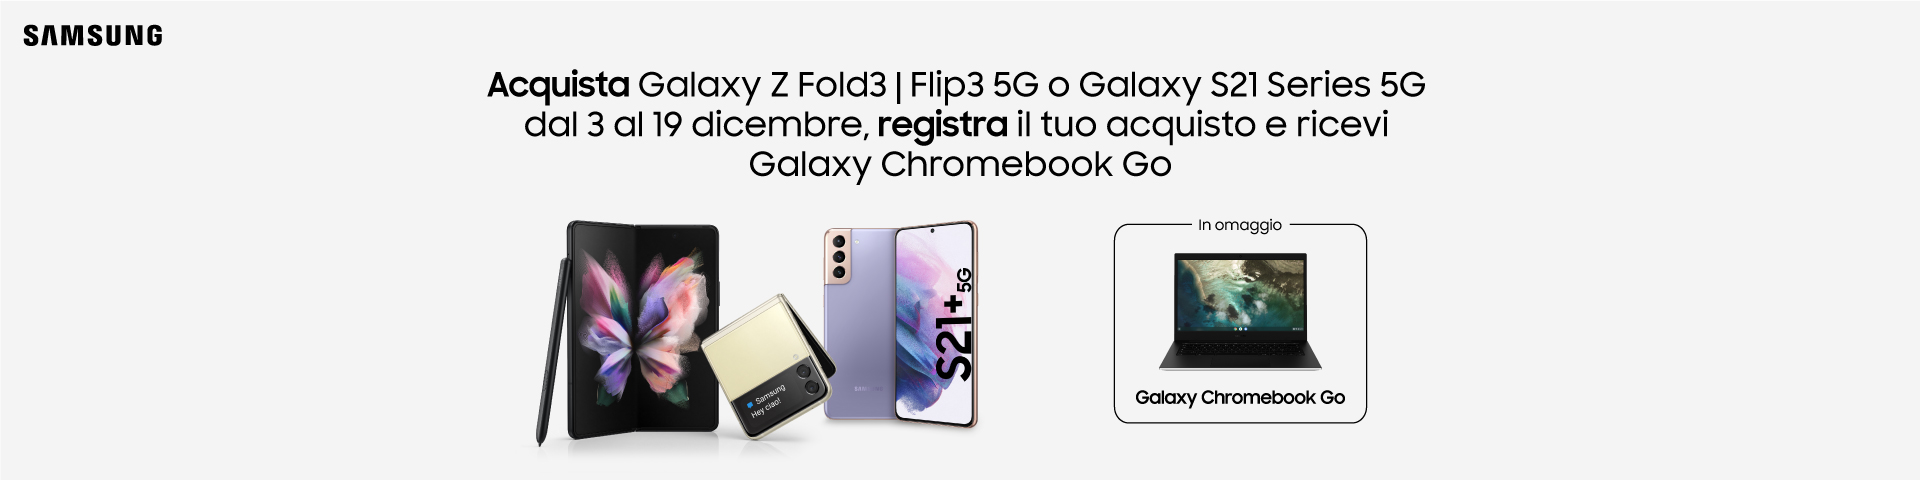 Promozione Samsung Galaxy Chromebook Go in regalo con Z Fold3, Z Flip3 e S21